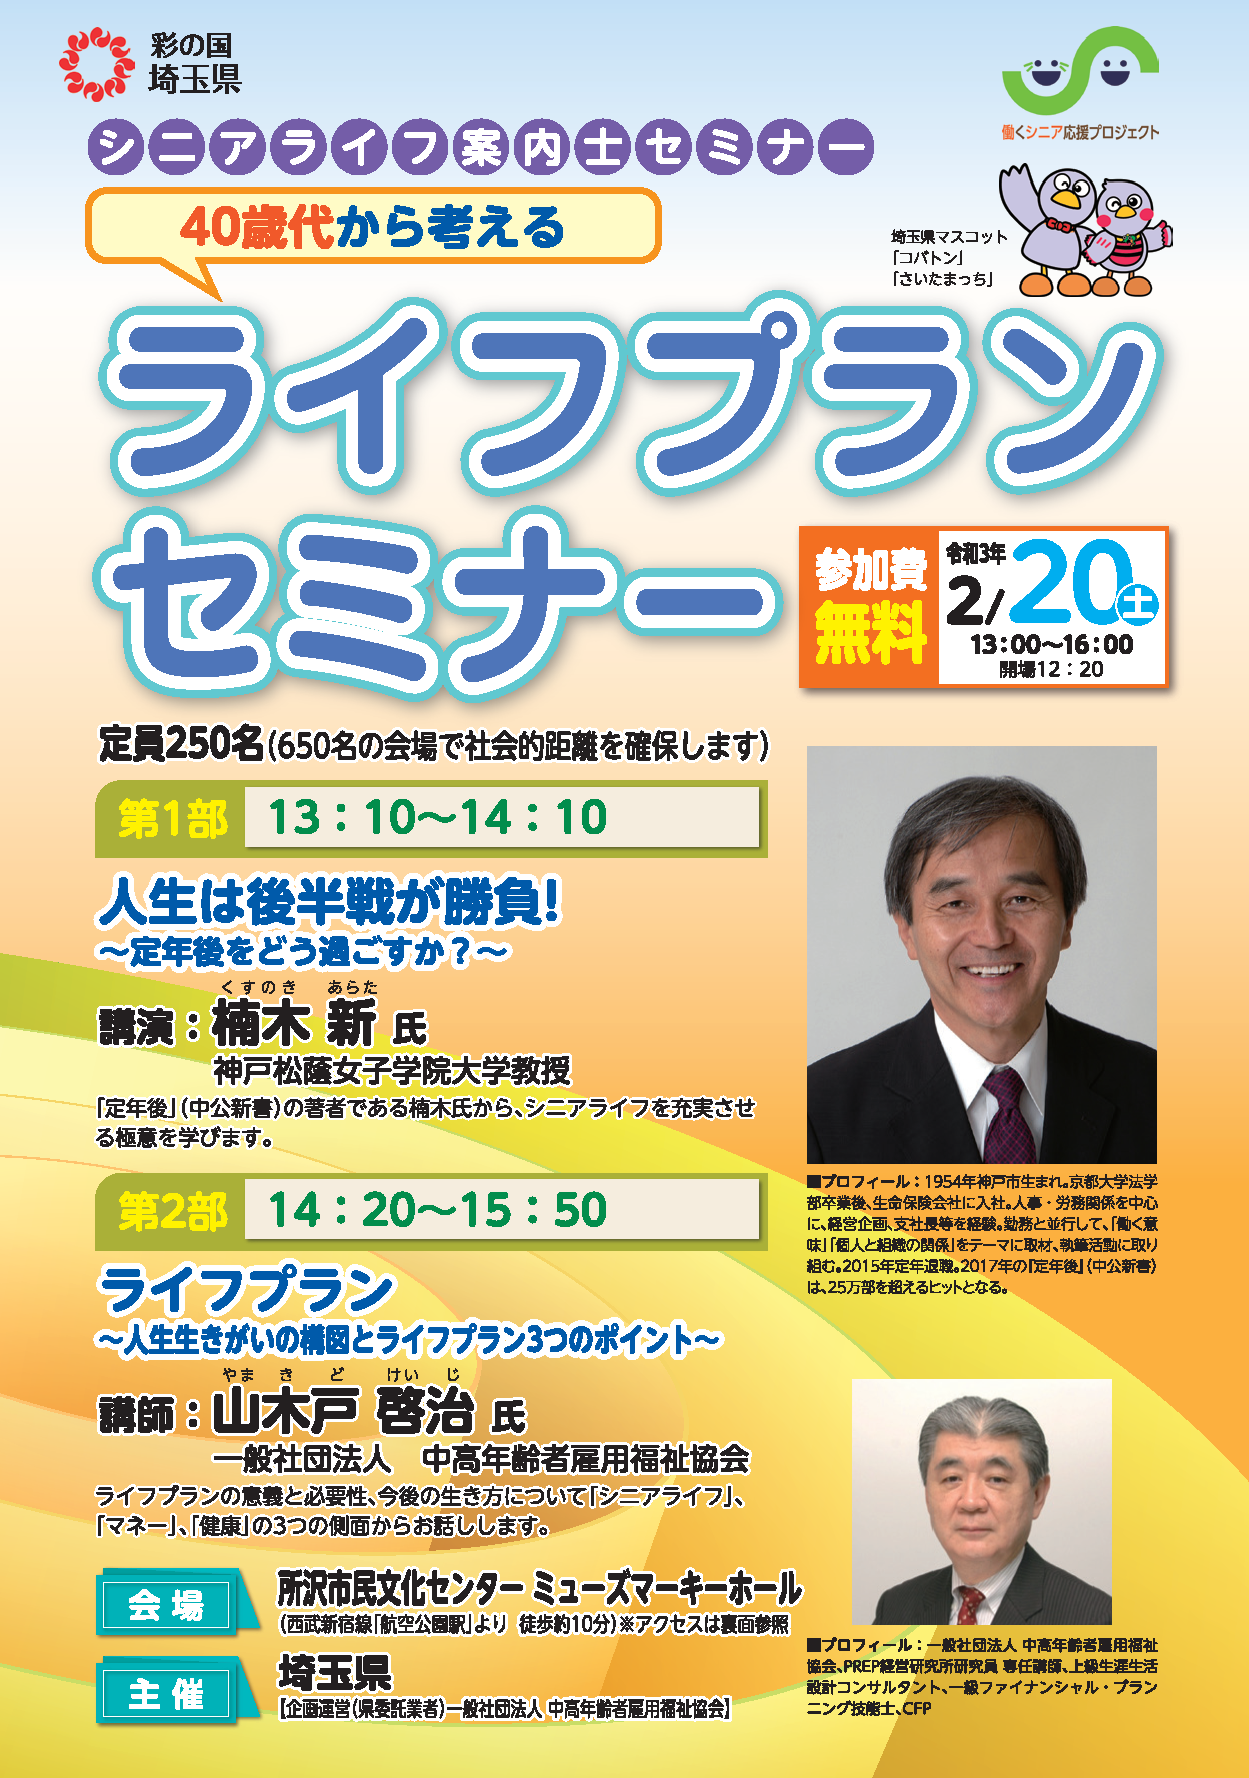 annaishi-seminar-20210220.png